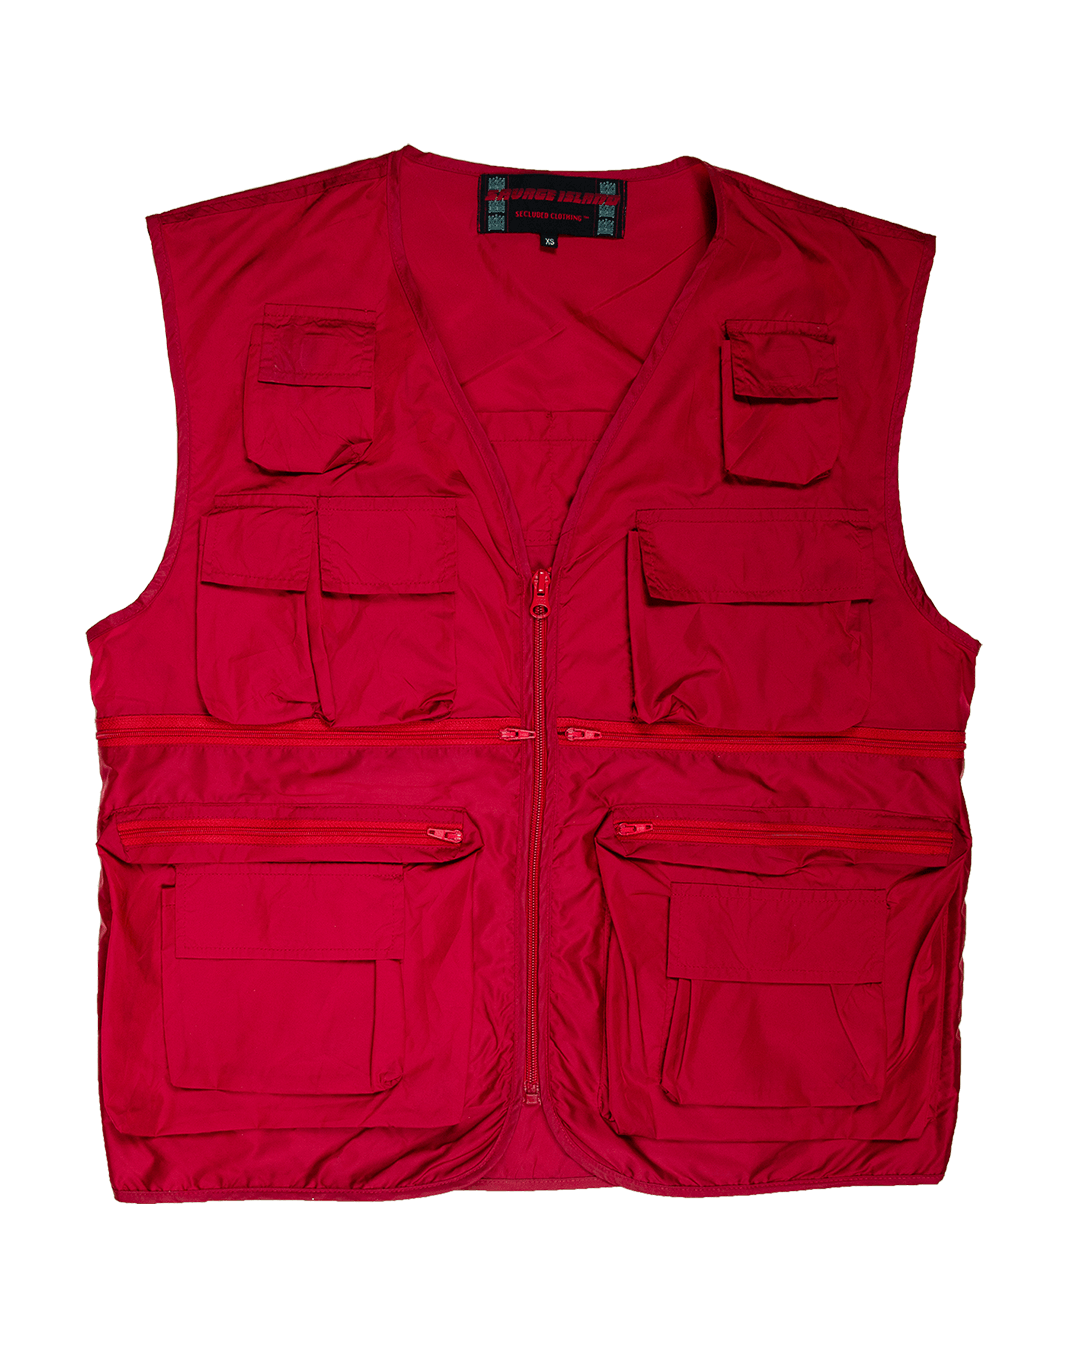 Secluded 22 Pocket Fishers Vest